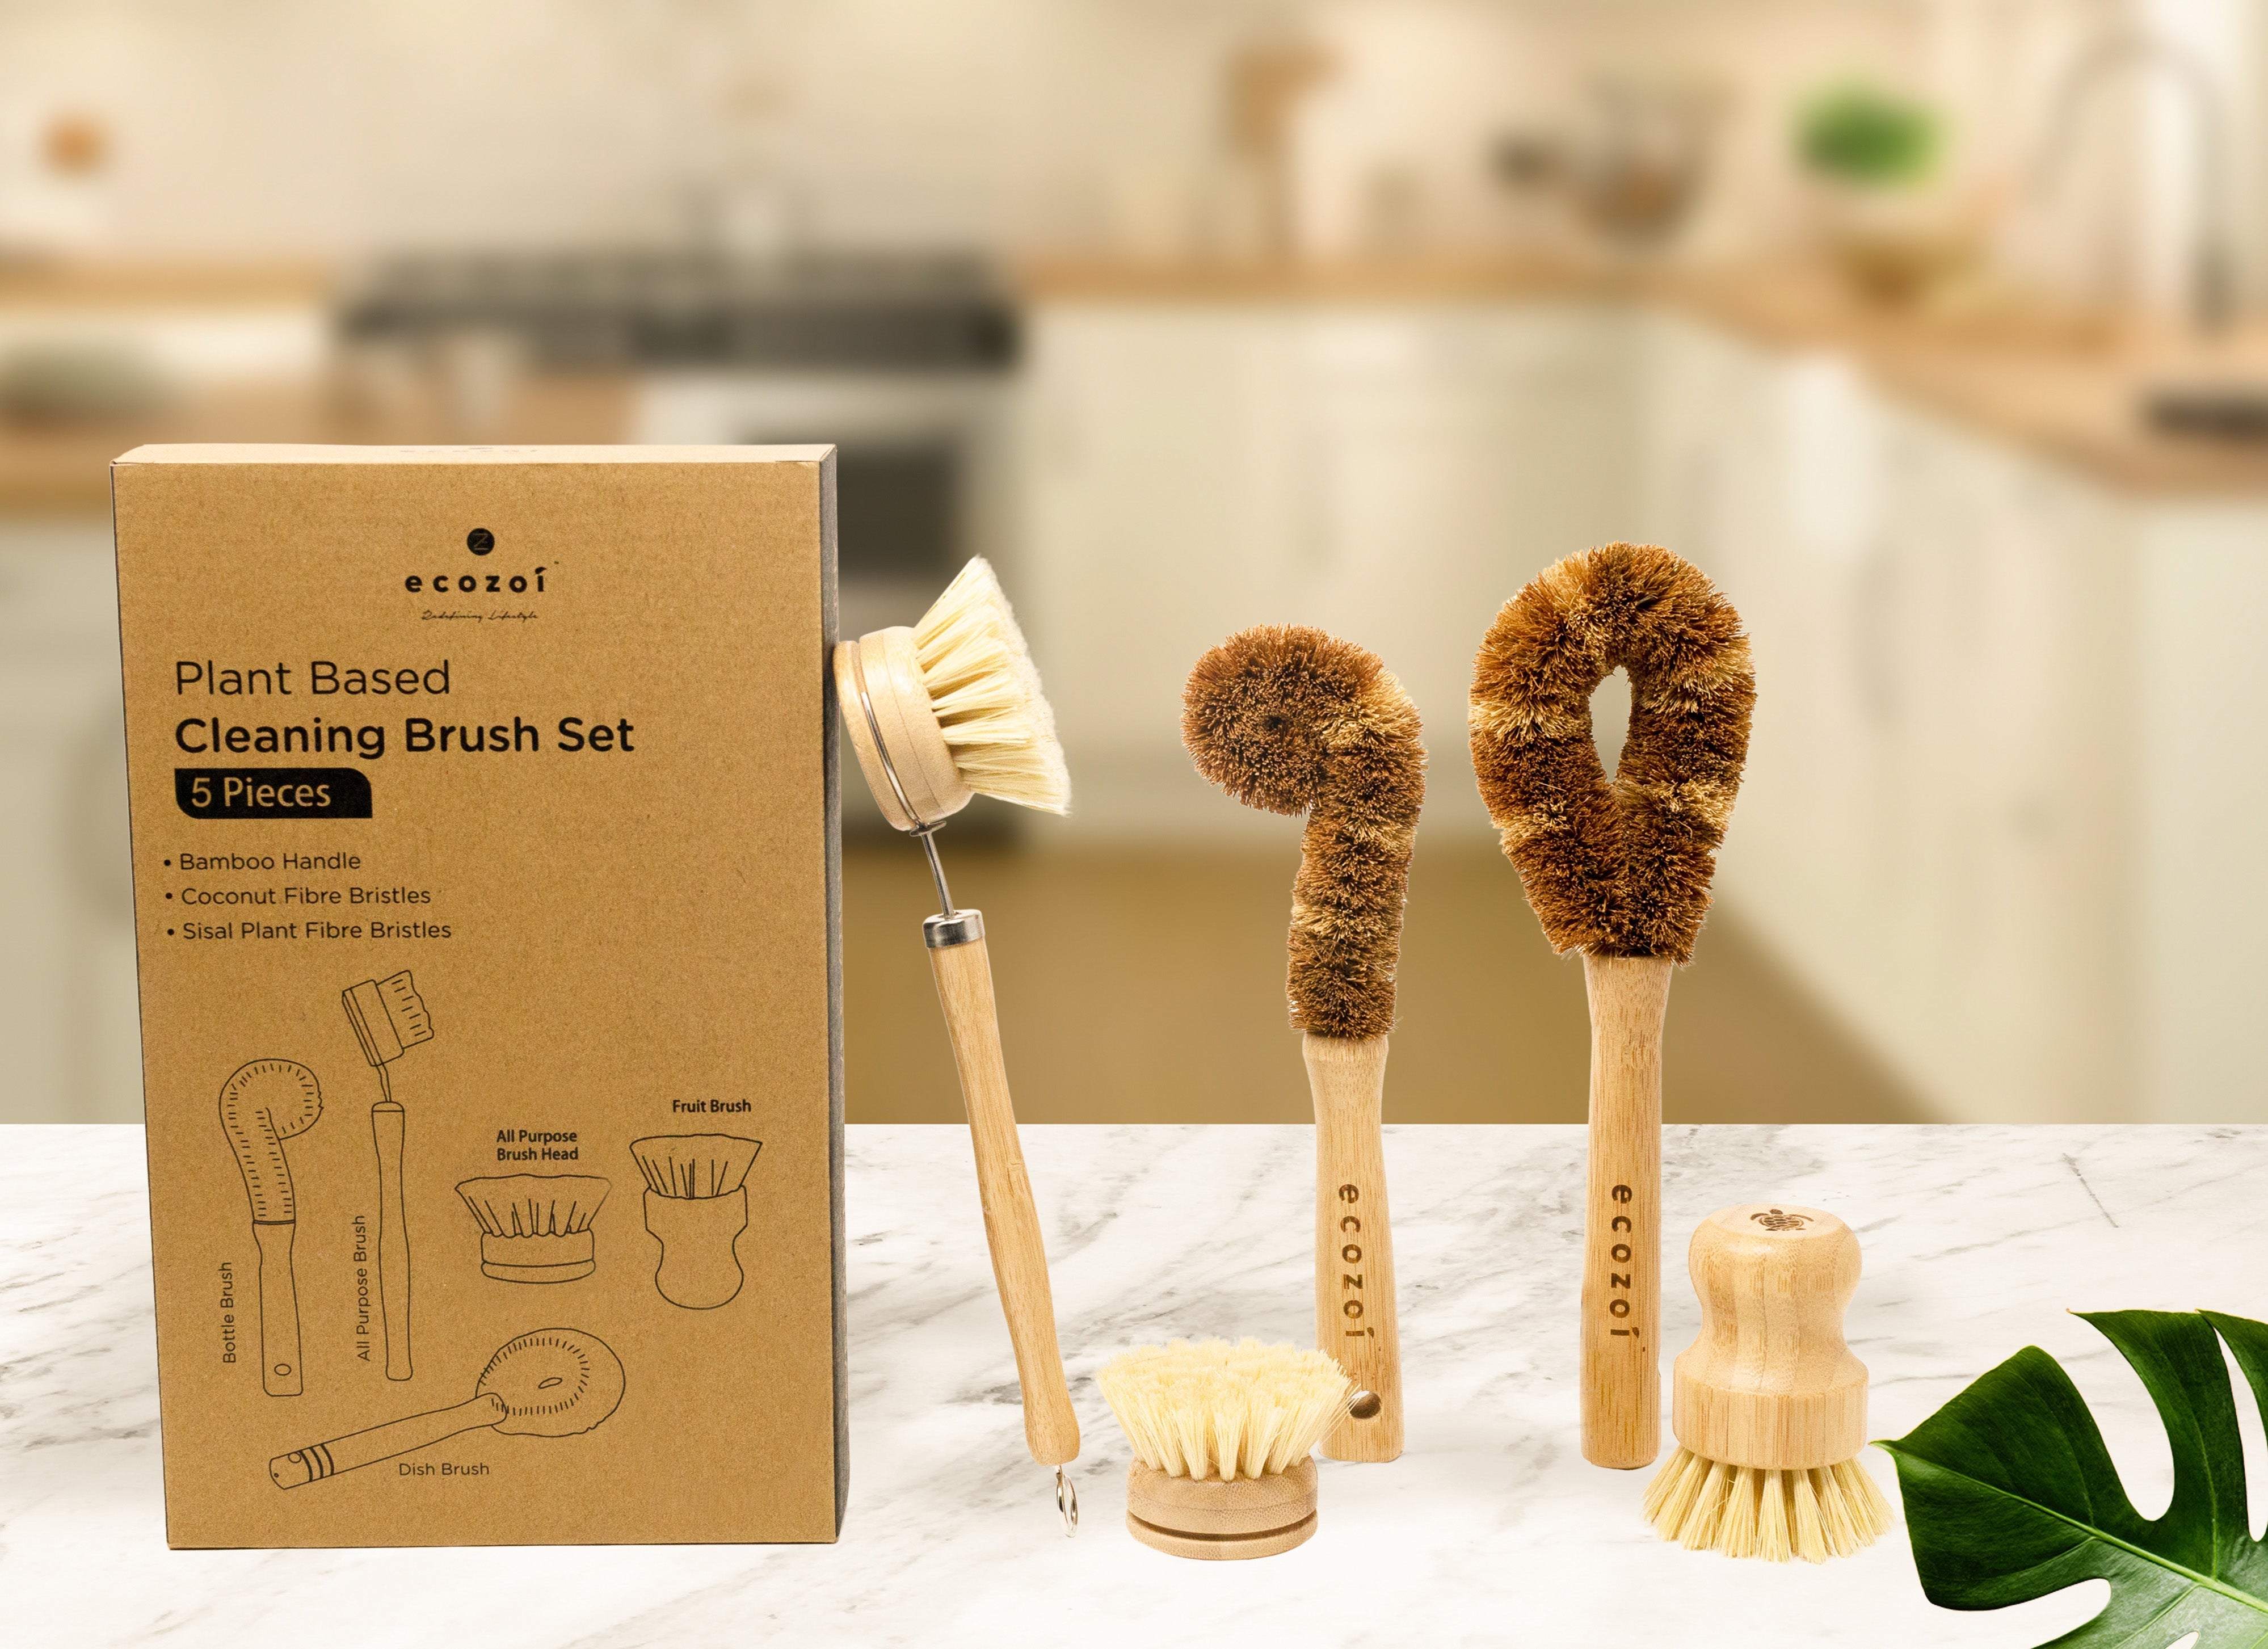 Plant Based Cleaning Brush Set, 5 Piece for Vegetable, and Kitchen Dish Cleaning Cleaning Brush Set ecozoi 